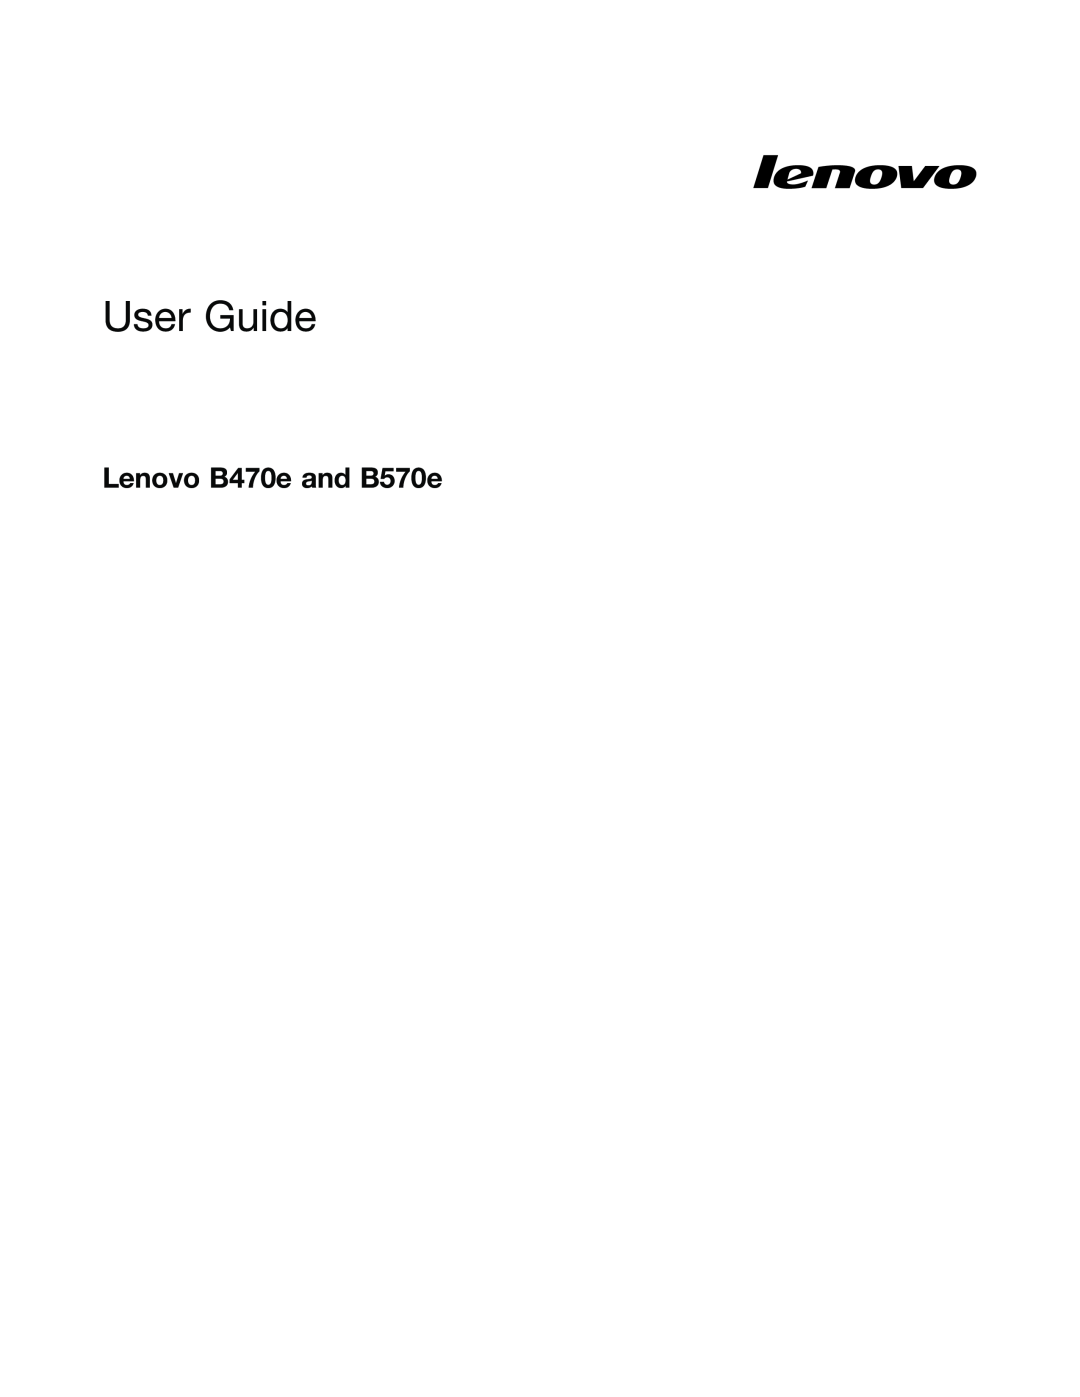 Lenovo B470E manual Lenovo B470e and B570e, User Guide 